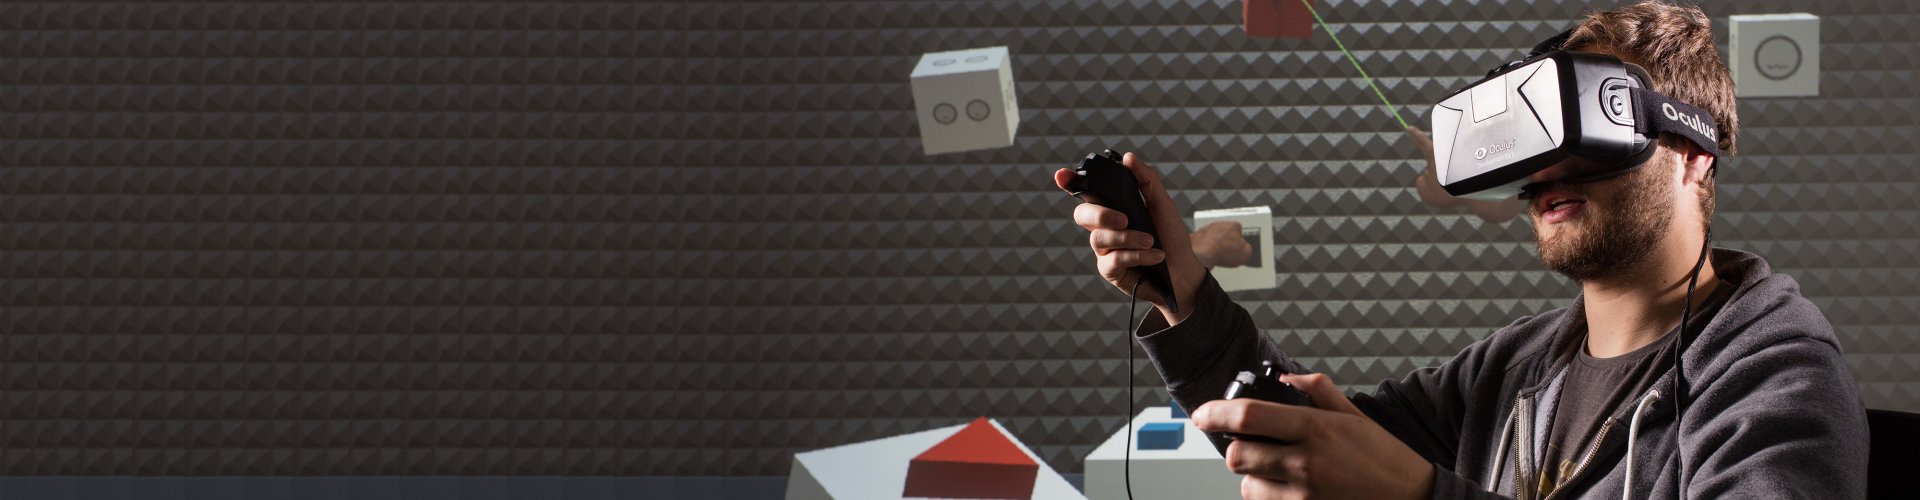 Junger Mann in einem virtuellen Raum mit VR Brille sowie Controllern